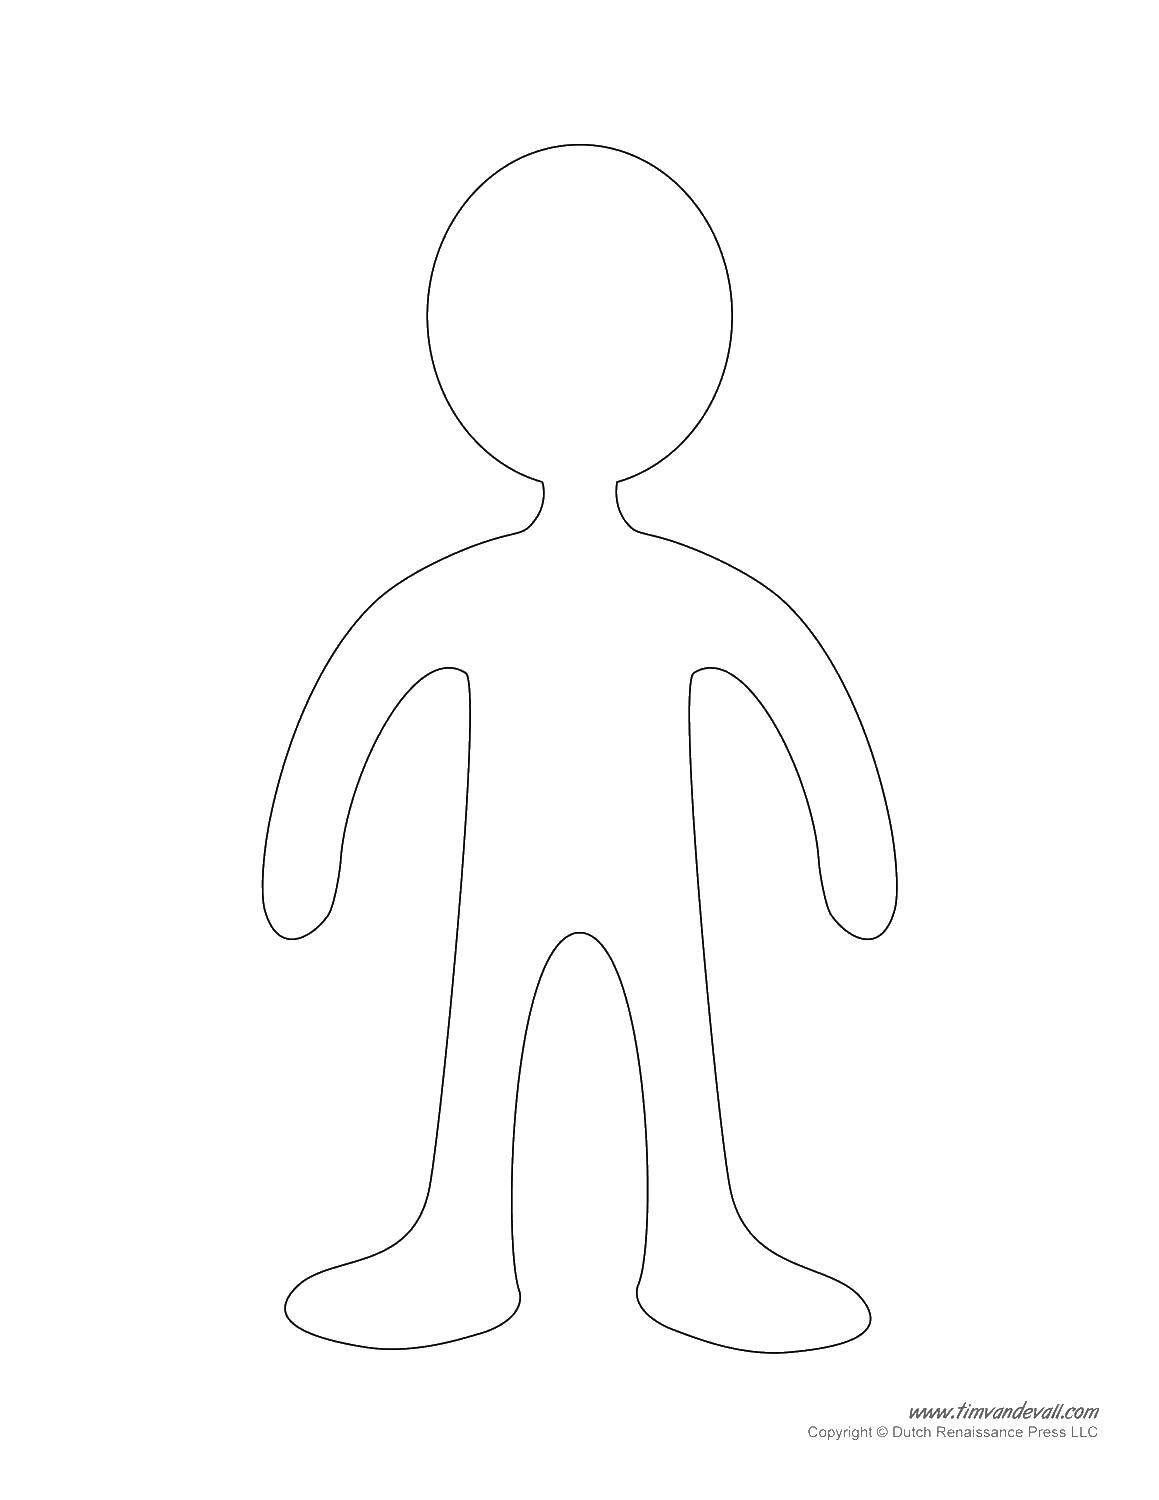 Название: Раскраска Контур человечка. Категория: Контур куклы. Теги: куклы, контуры, человечек.